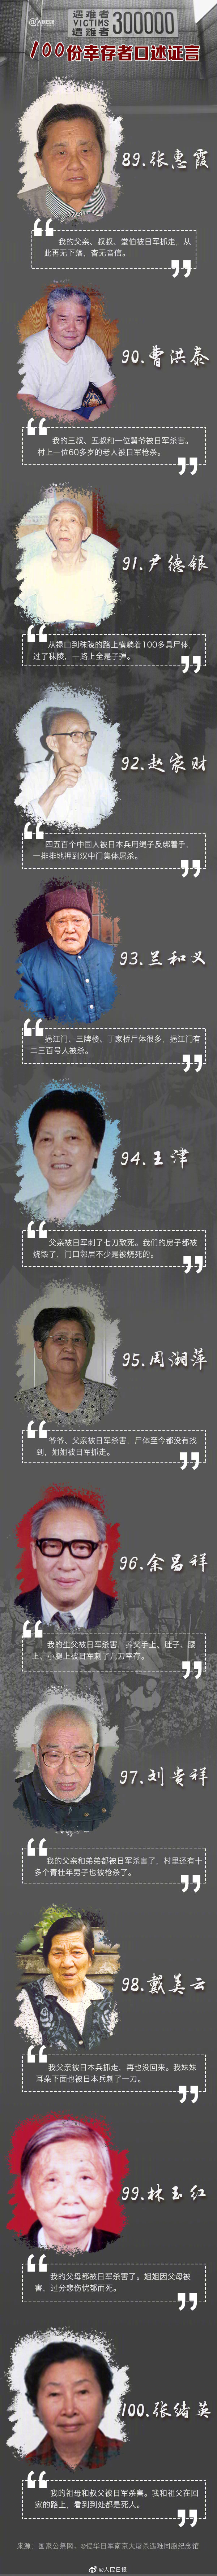 100份南京大屠杀幸存者证言